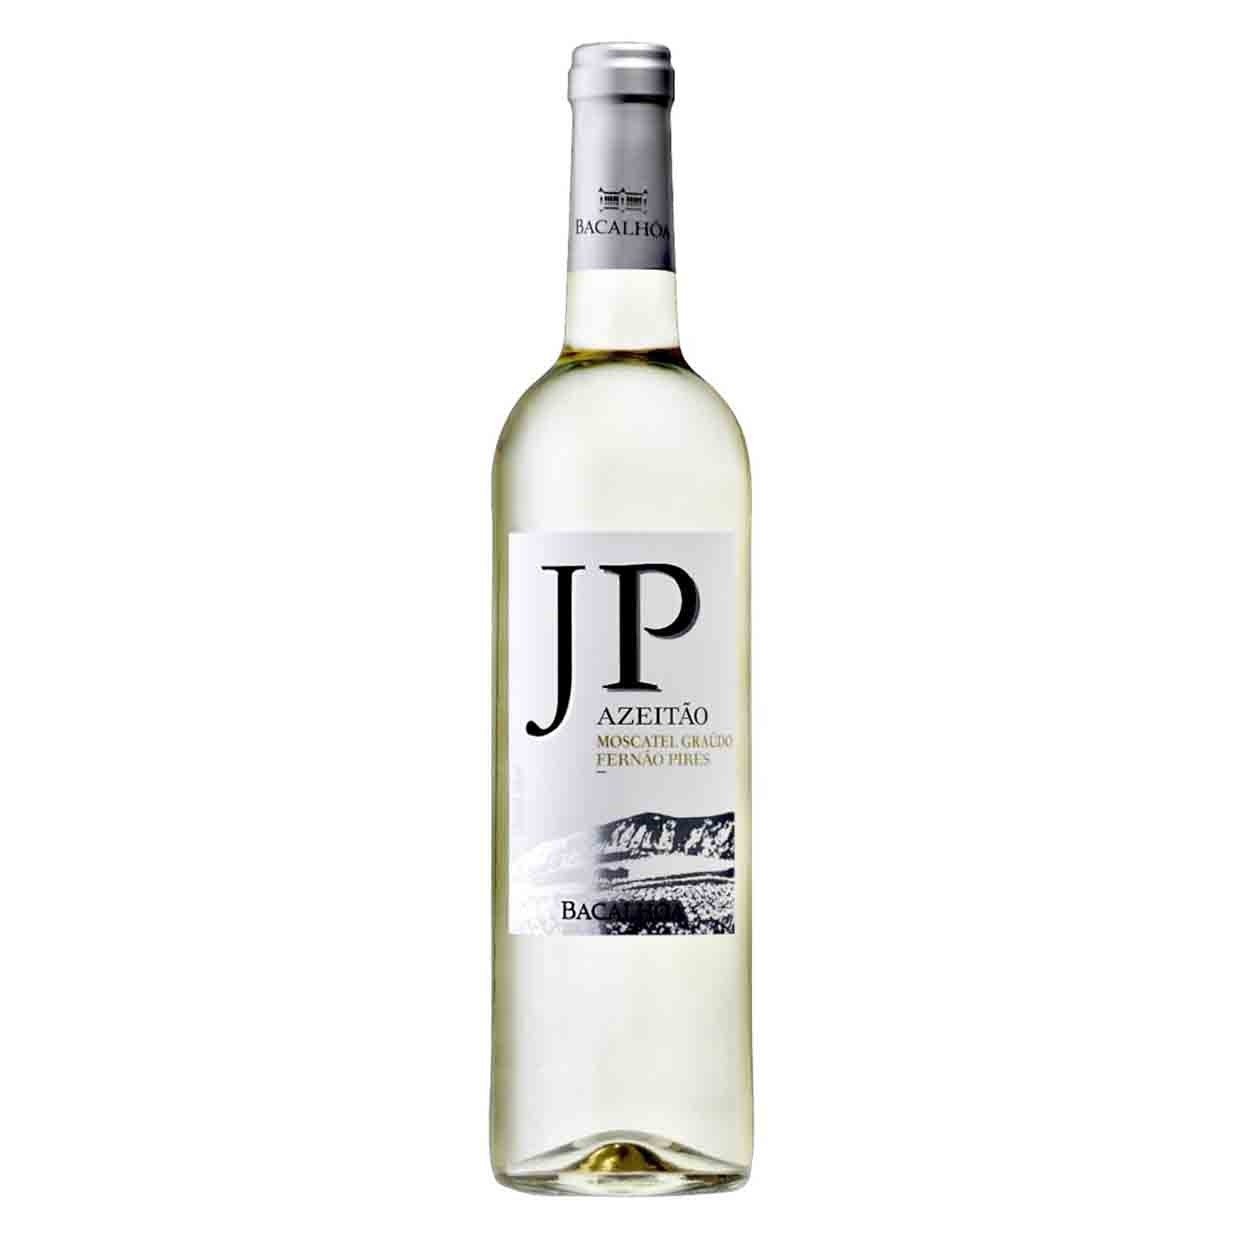 Вино Bacalhoa JP Azeitao Branco, біле, сухе, 13%, 0,75 л (8000018967846) - фото 1